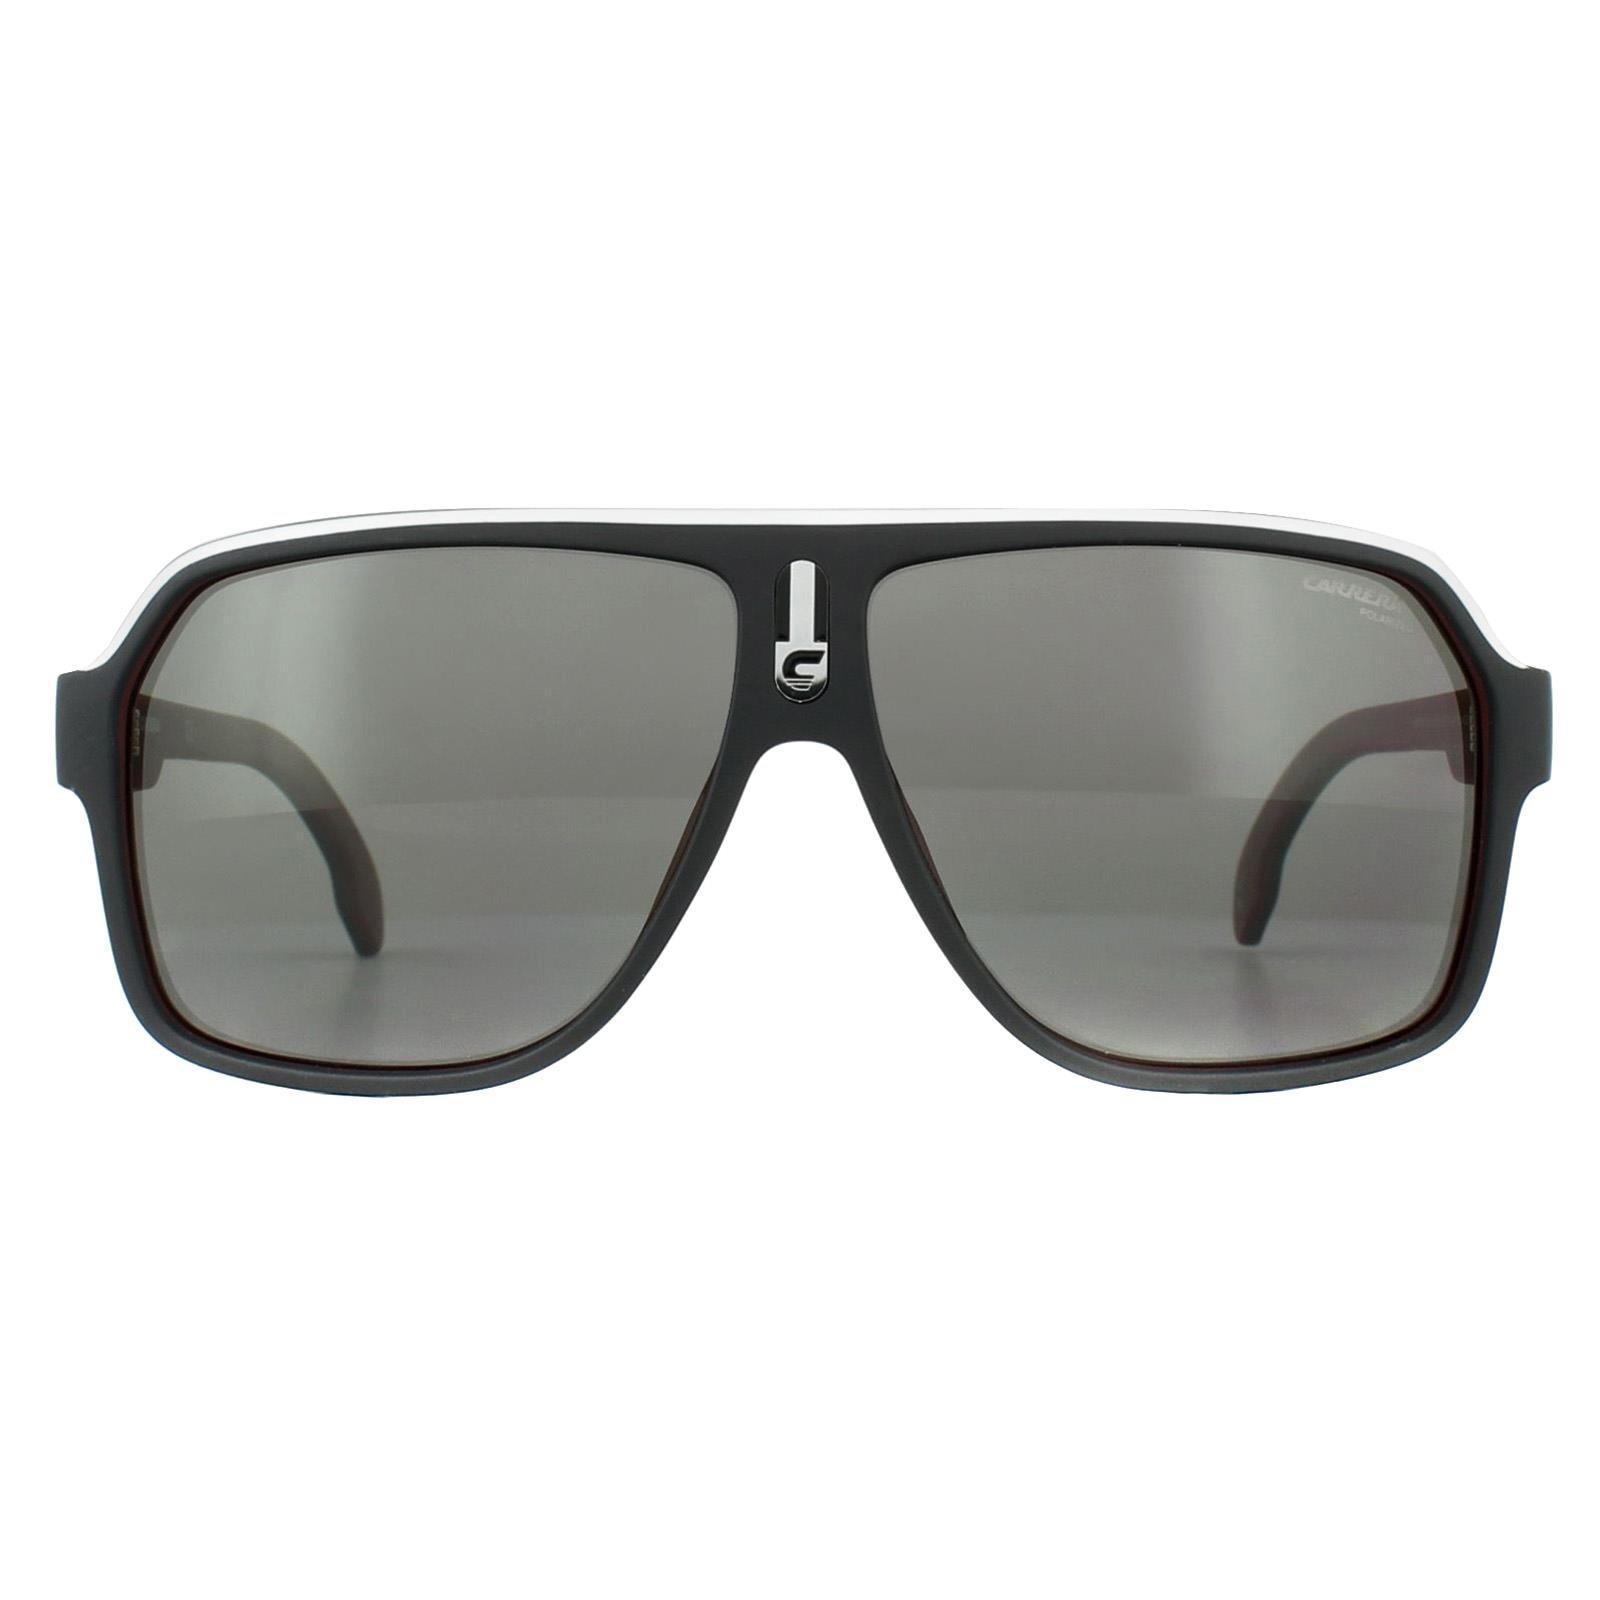 Прямоугольные матовые черные синие складные солнцезащитные очки с градиентом L778S Lacoste, черный